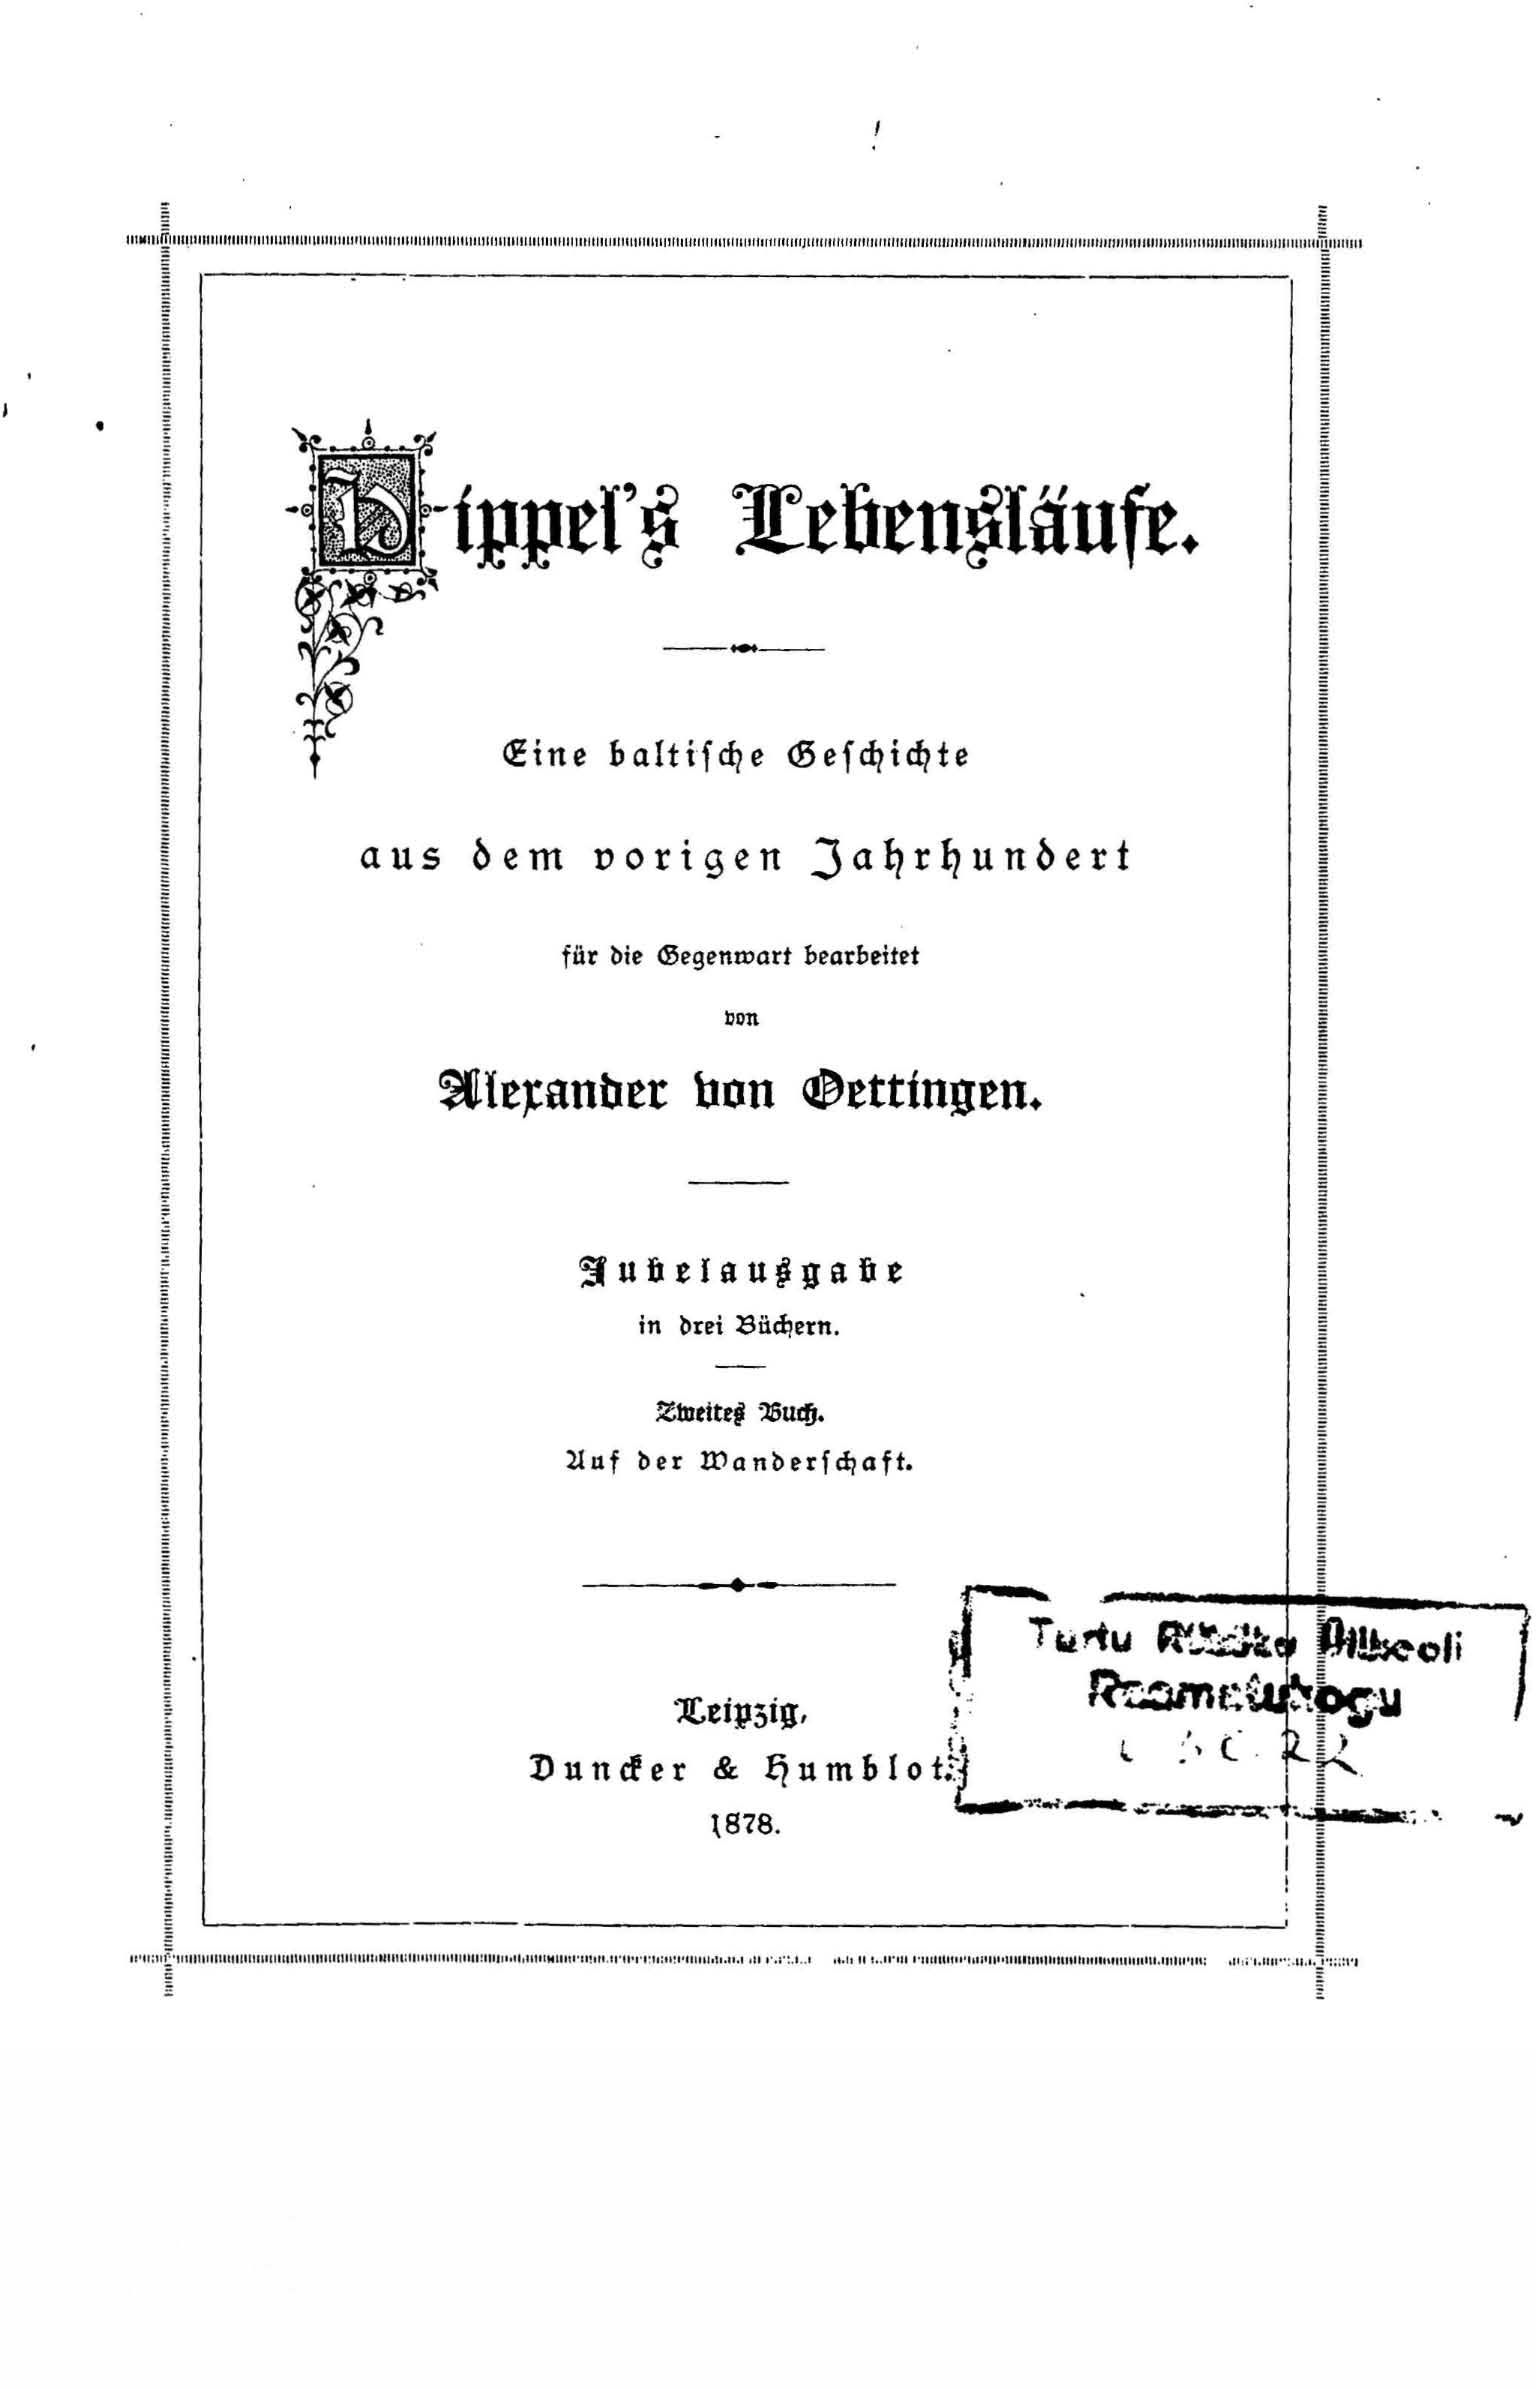 Hippel’s Lebensläufe [2] (1878) | 4. Titelblatt